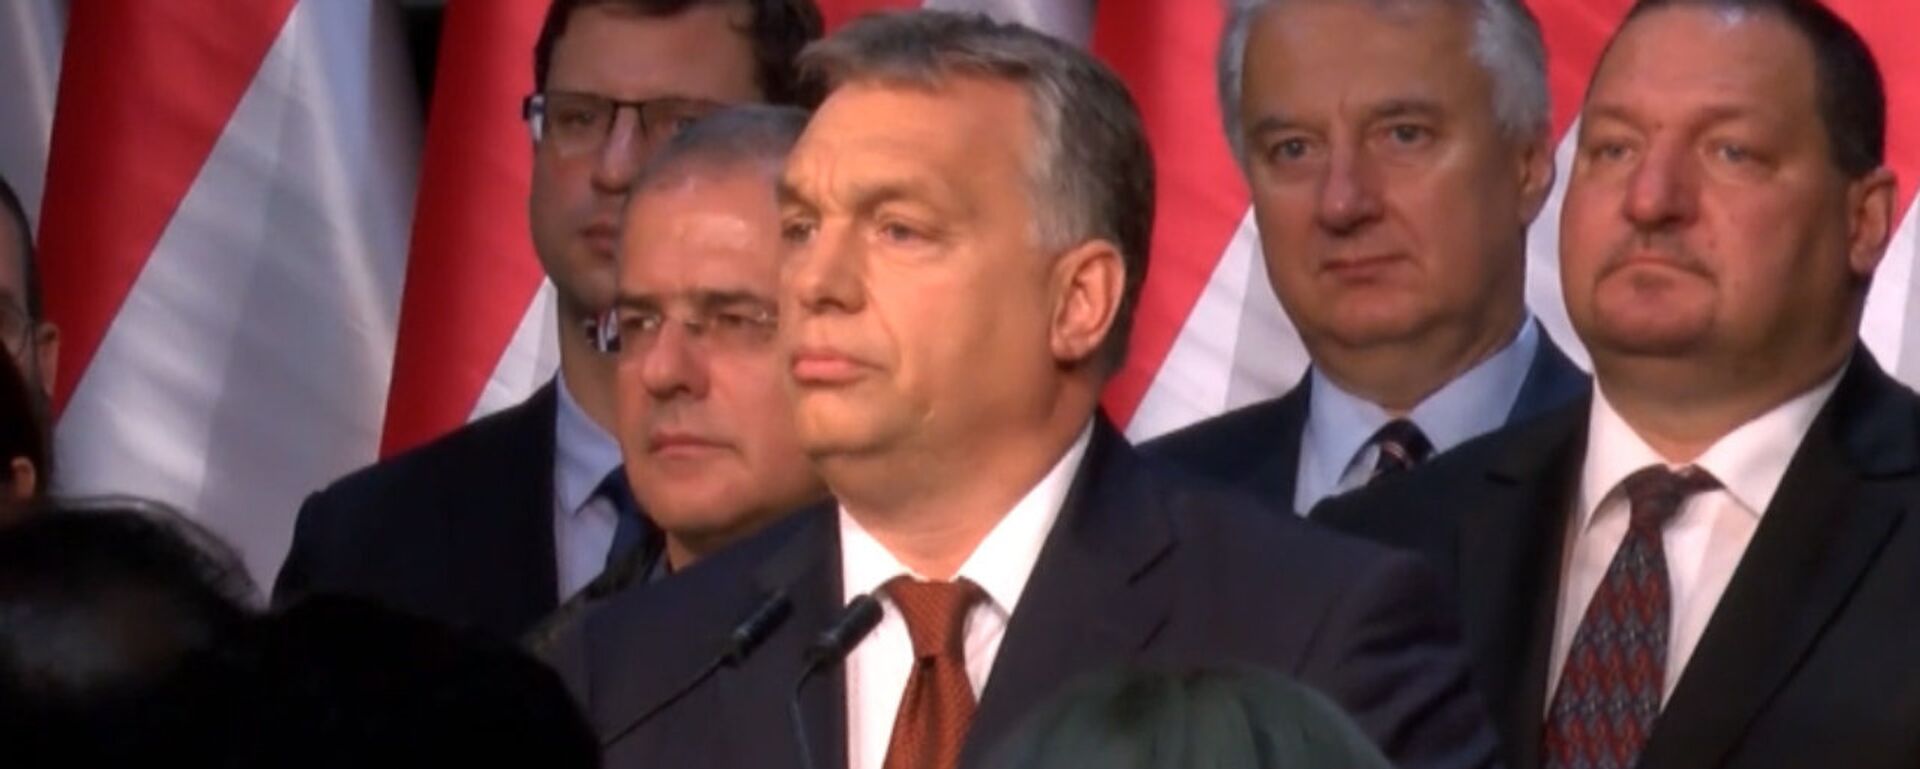 Премьер Венгрии обратился к гражданам после провала референдума - Sputnik Латвия, 1920, 03.10.2016